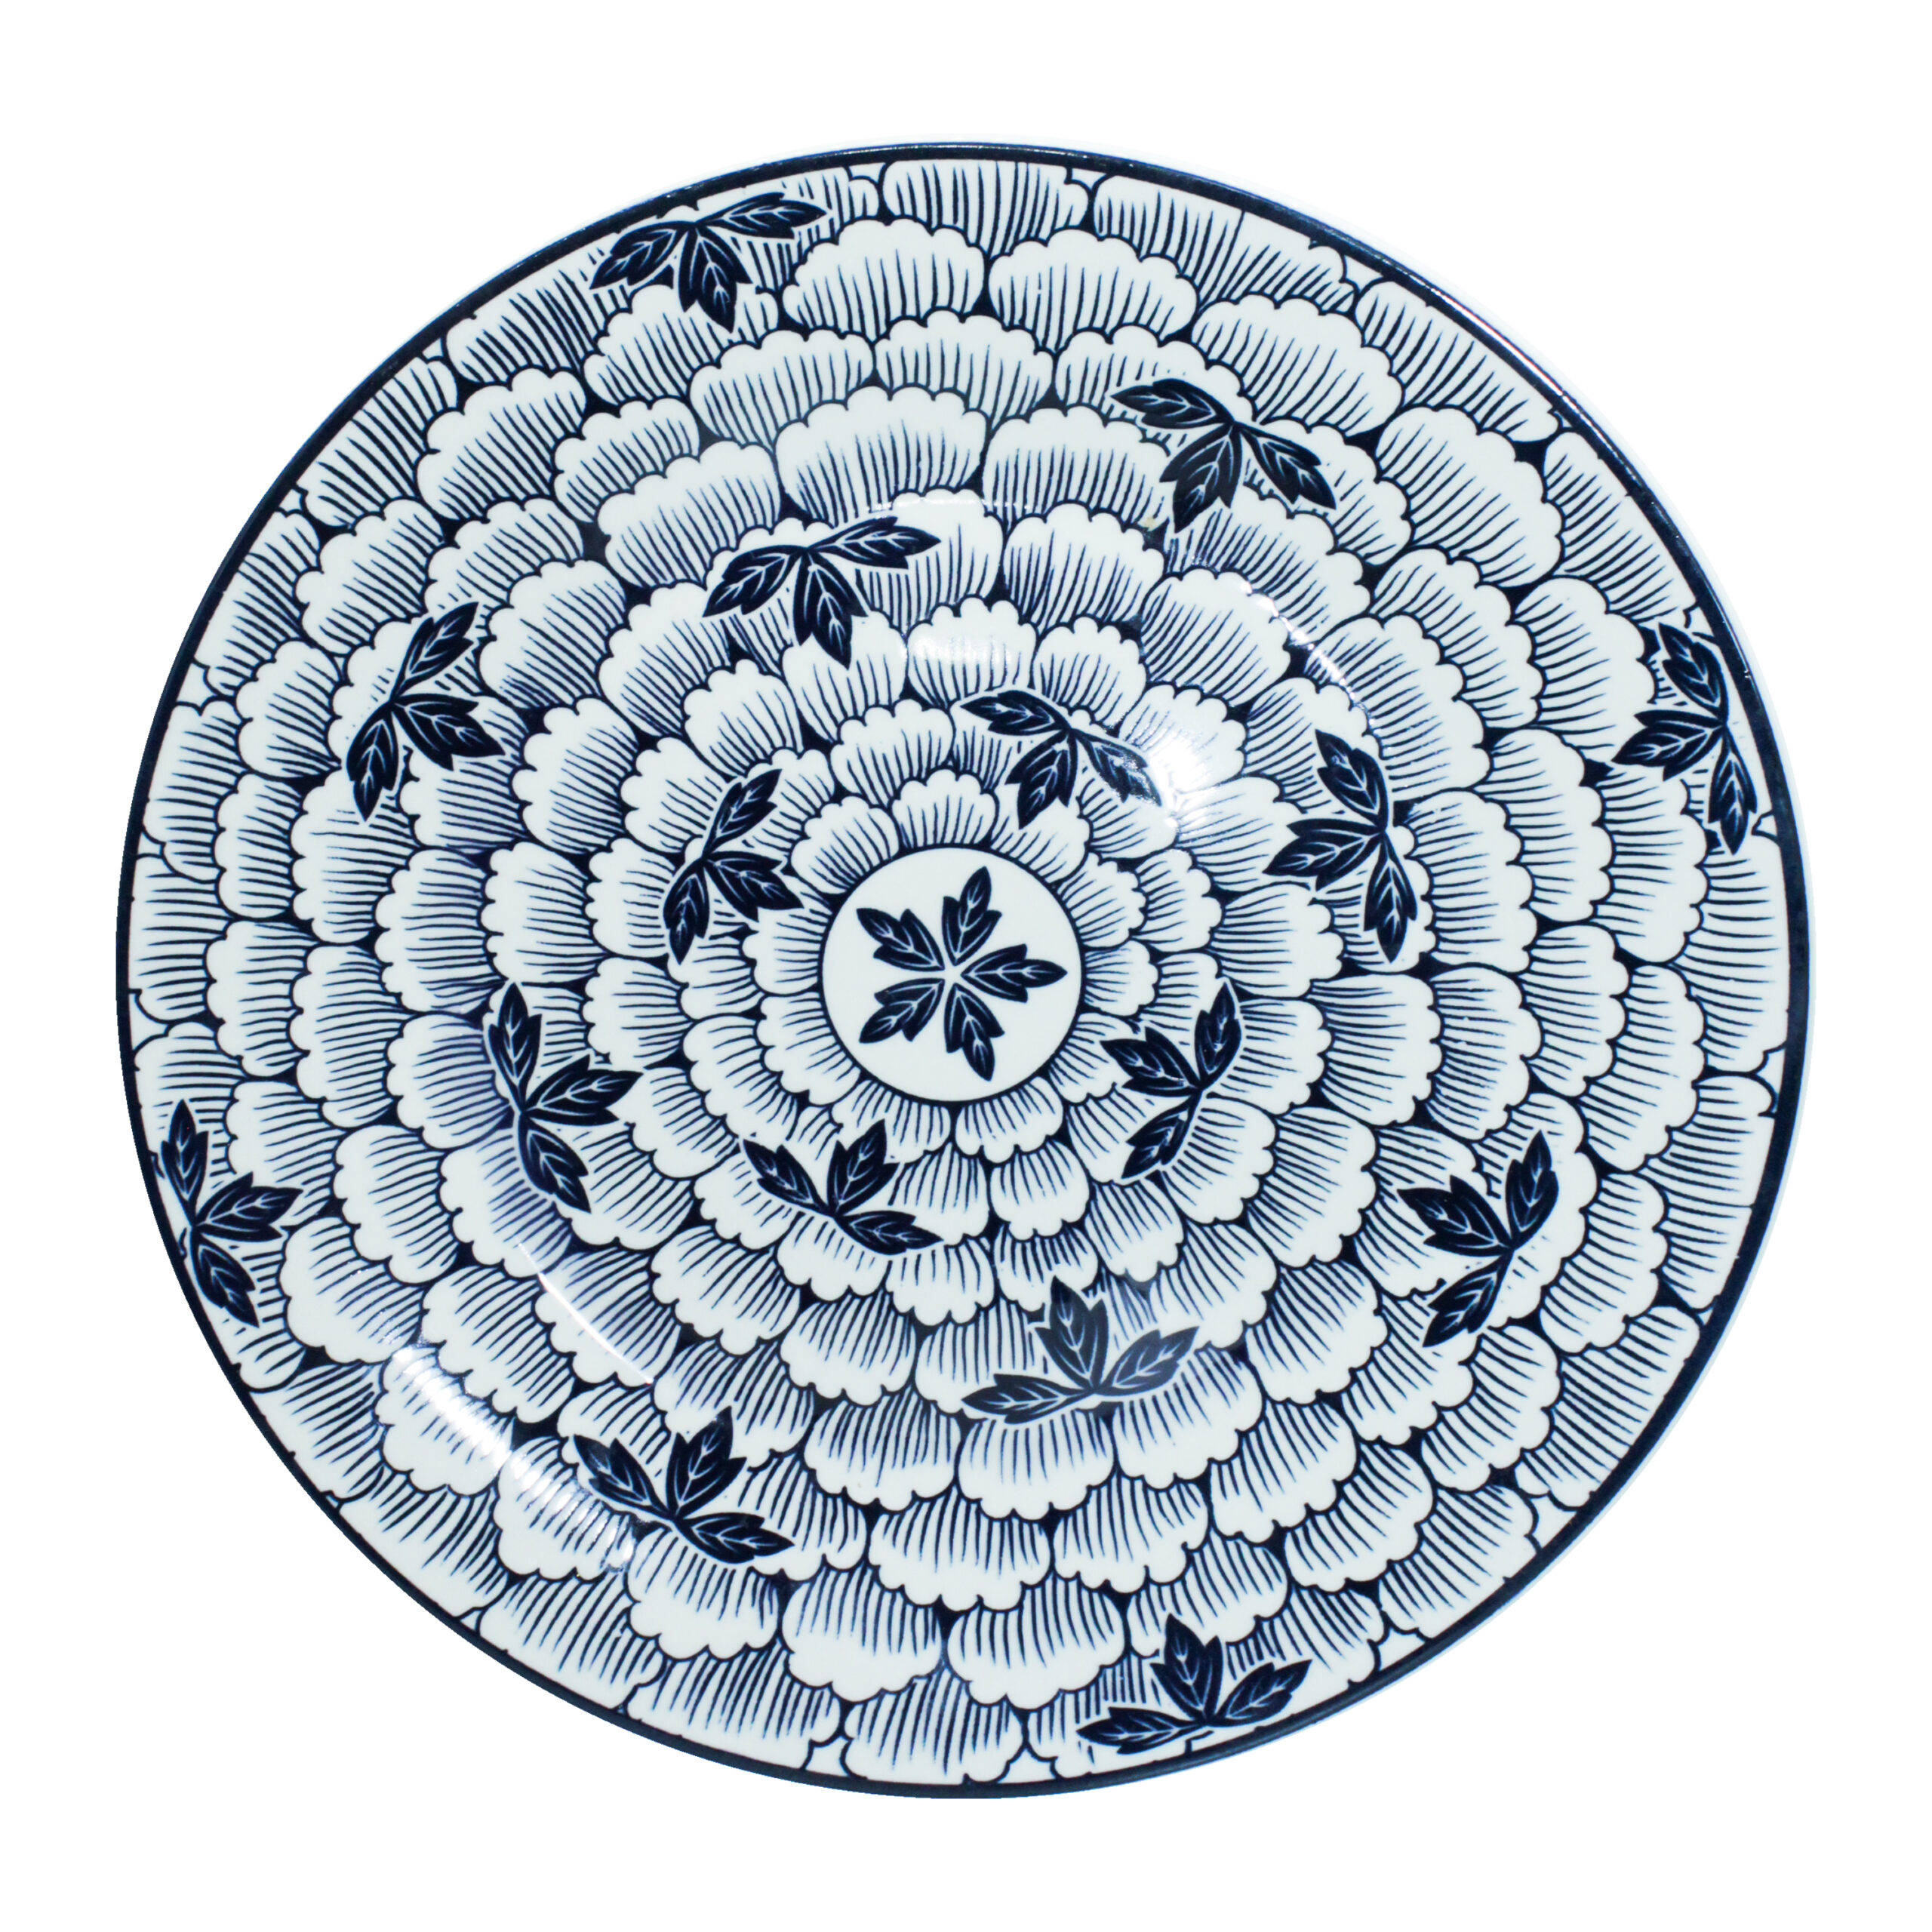 PORCELAIN DINNER PLATE ROUND 10.5" BLUE FLOWER DESIGN